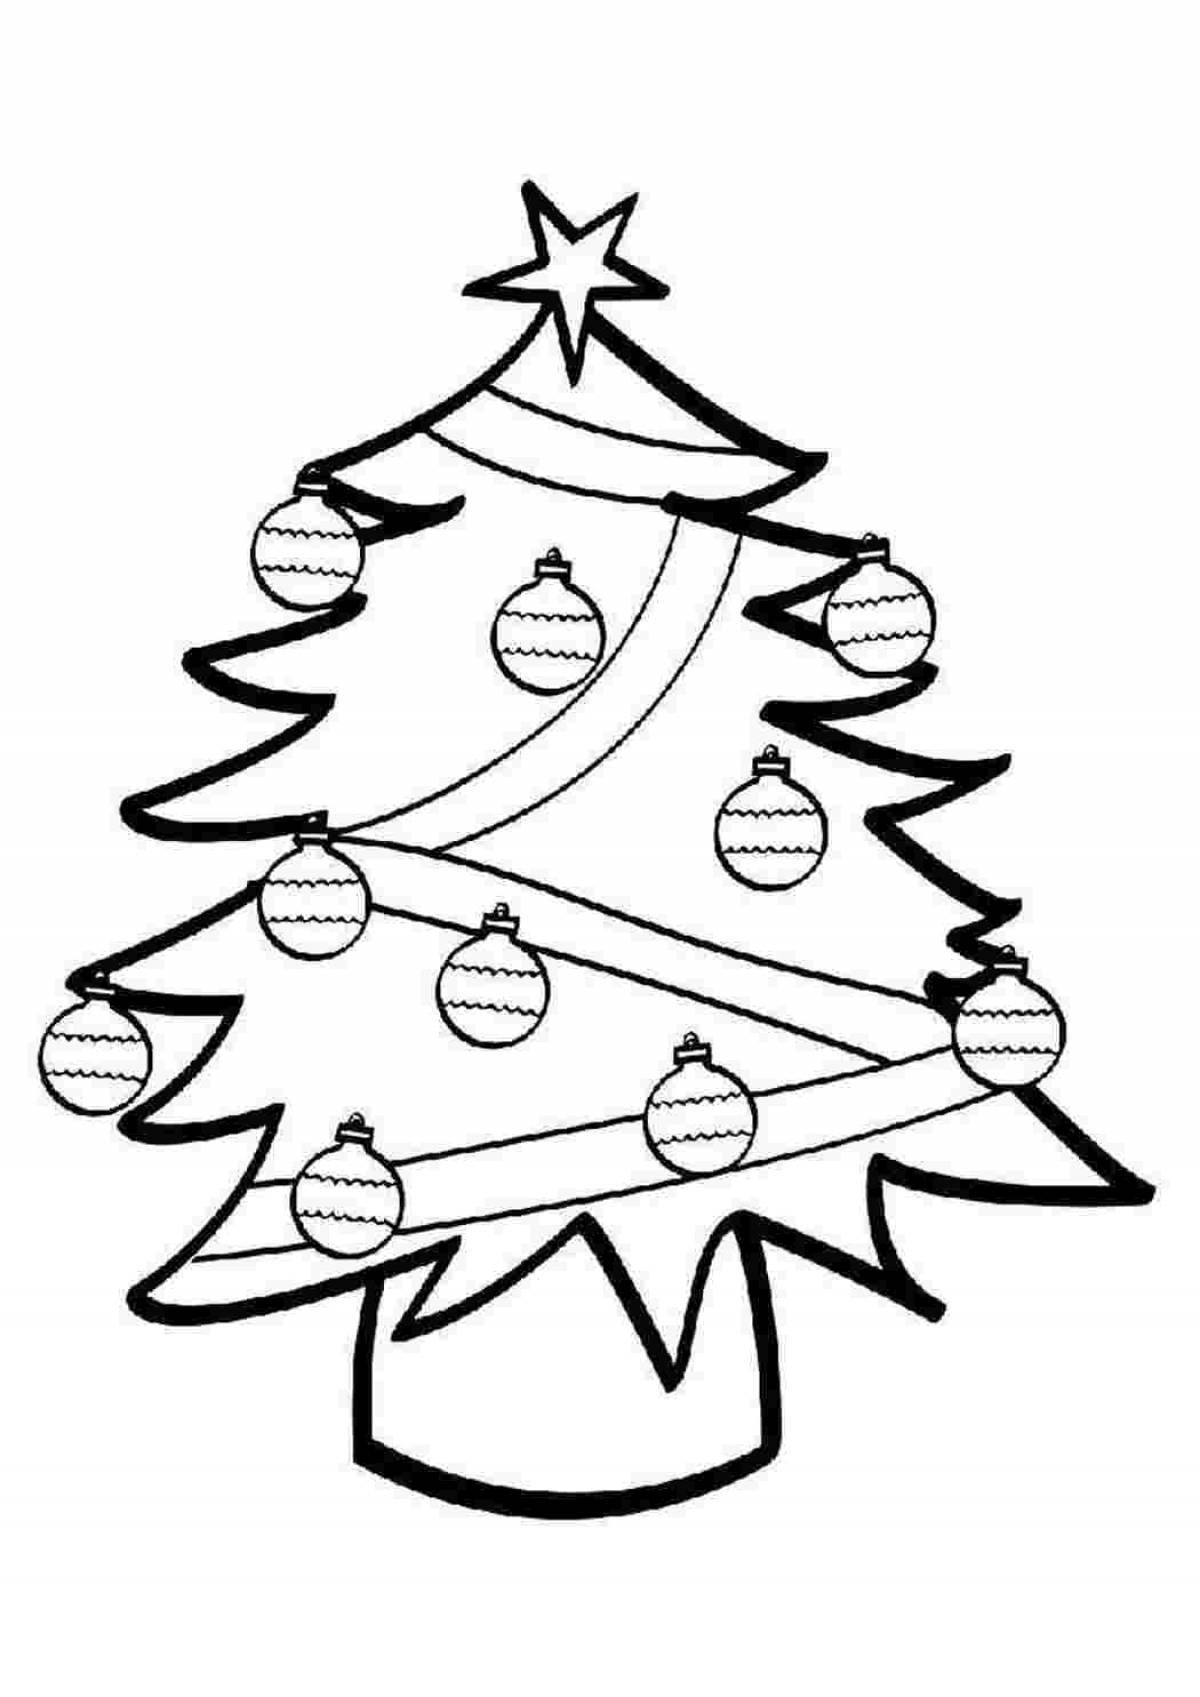 Adorable Christmas tree with balls